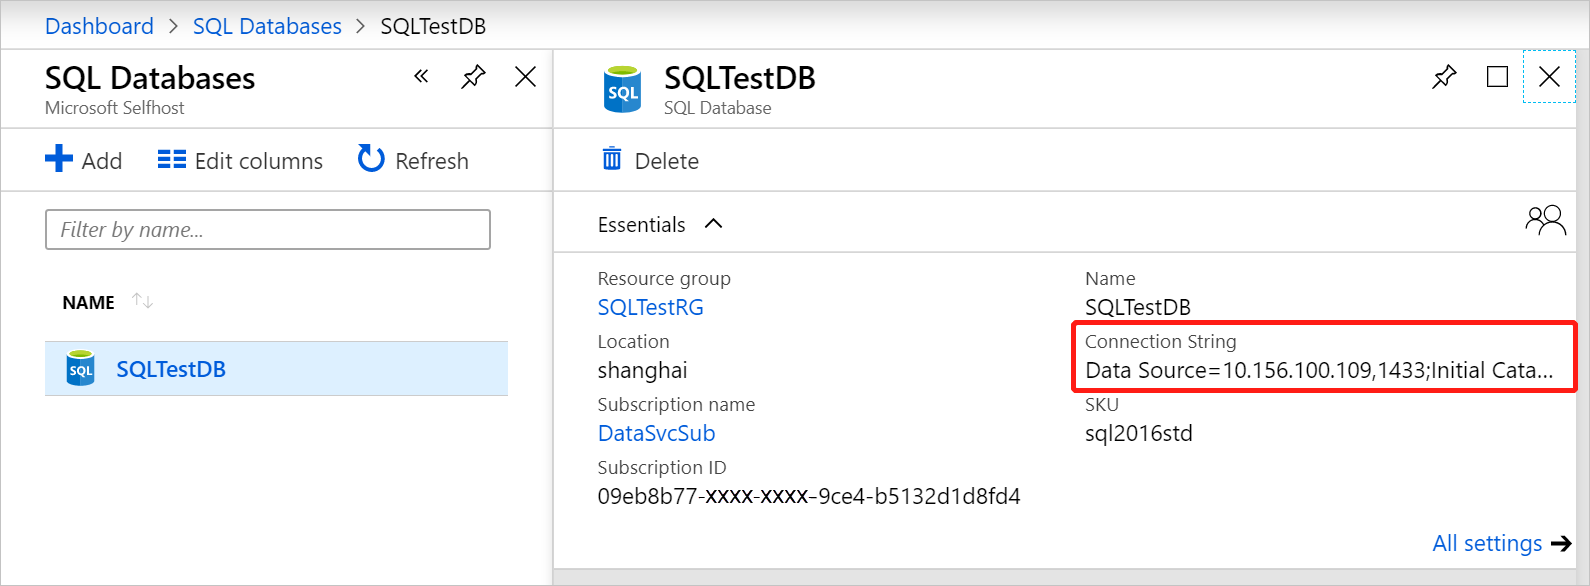 Hämta anslutningssträngen för SQL Server-databasen